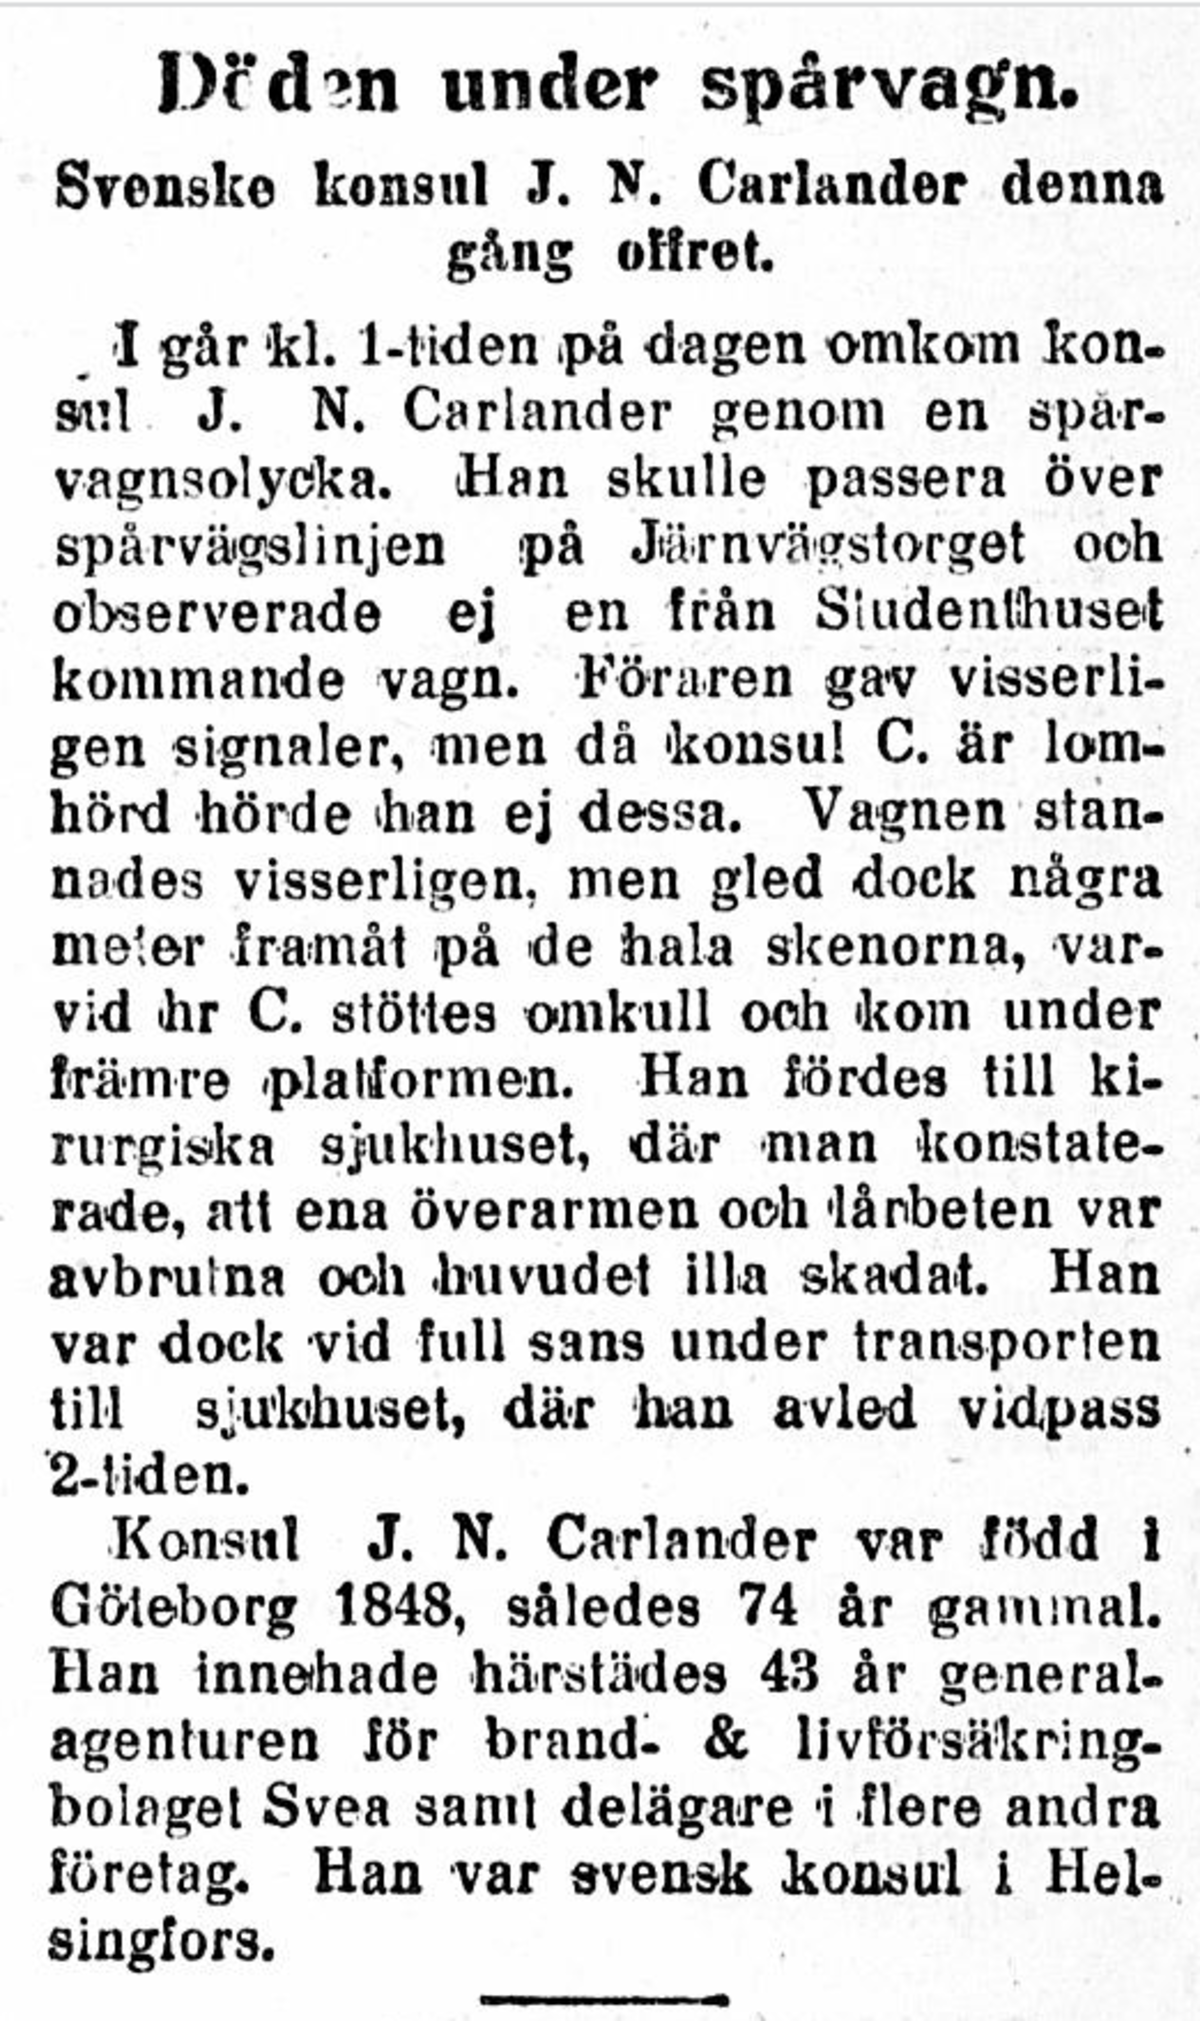 Arbetarbladet berättar om en spårvagnsolycka med dödlig utgång. Svenske konsuln J. N. Carlander blev under en spårvagn och avled i 74 års ålder.